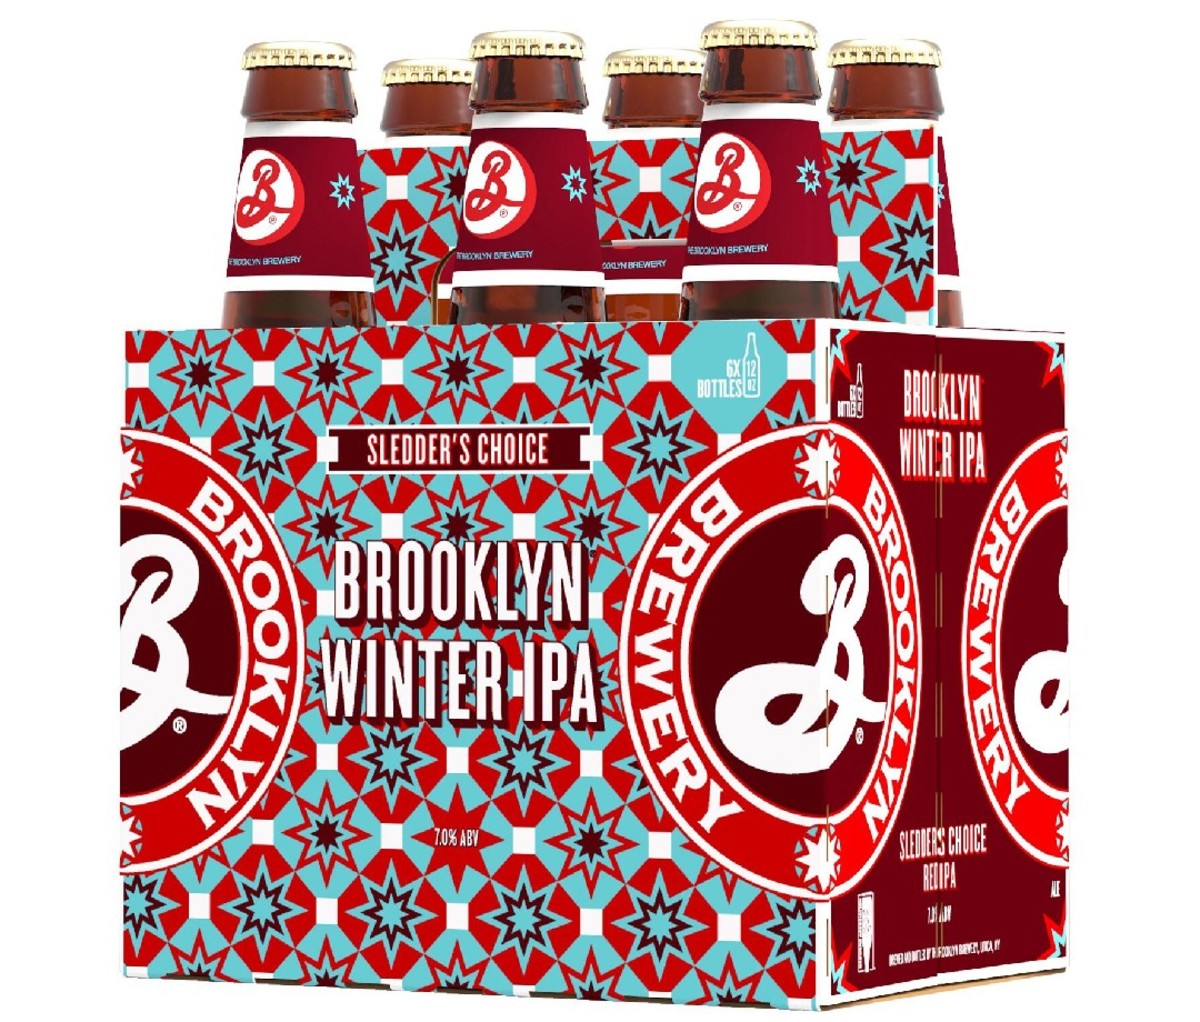 6-pack (bottles) of Brooklyn Winter IPA